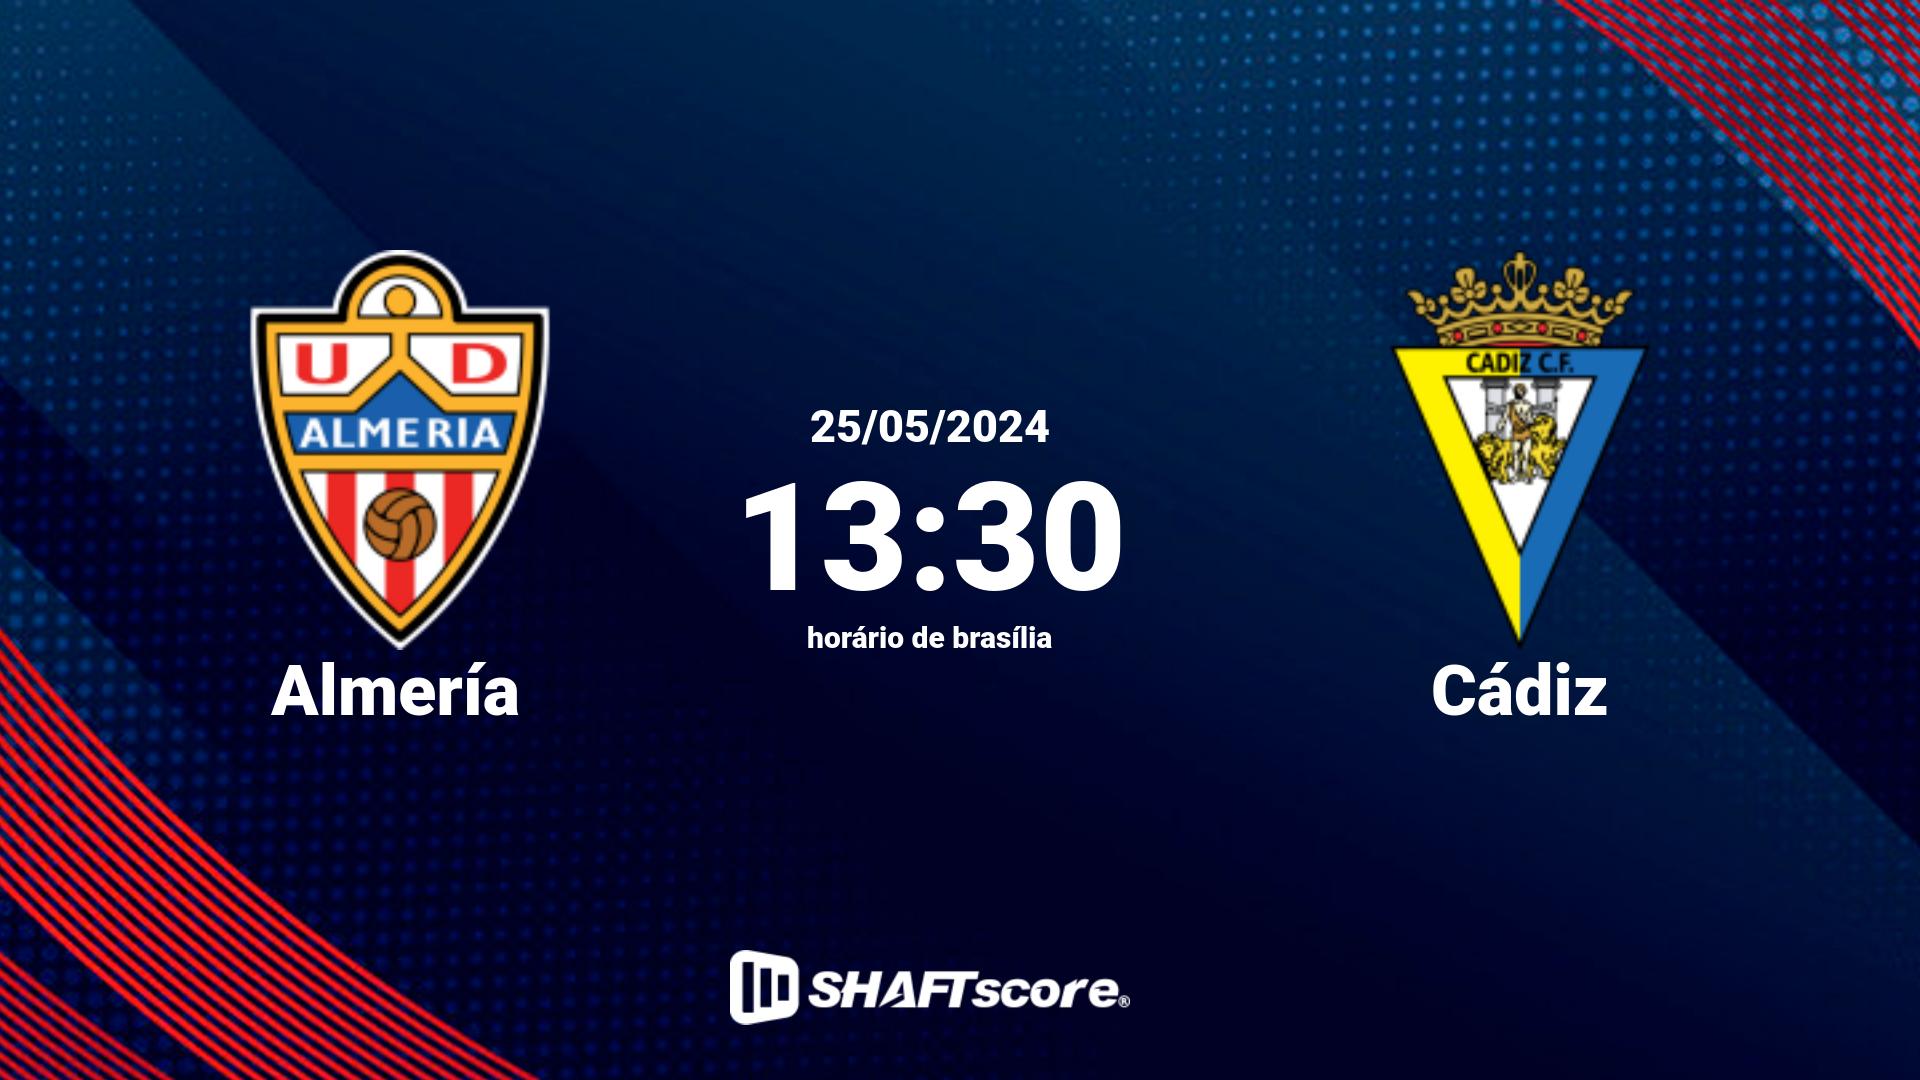 Estatísticas do jogo Almería vs Cádiz 25.05 13:30